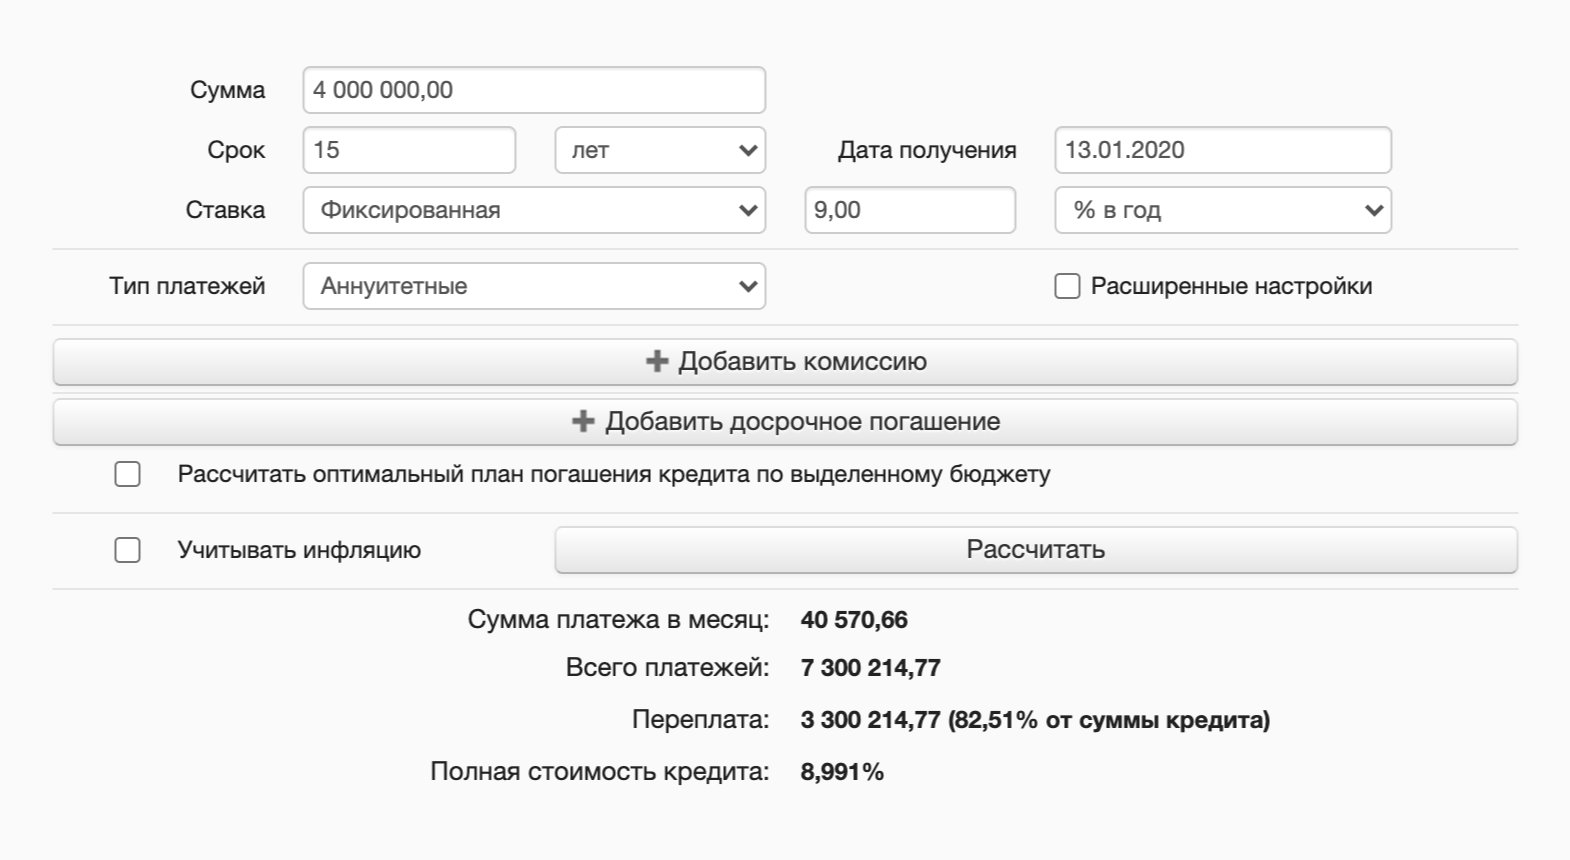 Переплата по кредиту без досрочных погашений — около 3,3 млн рублей